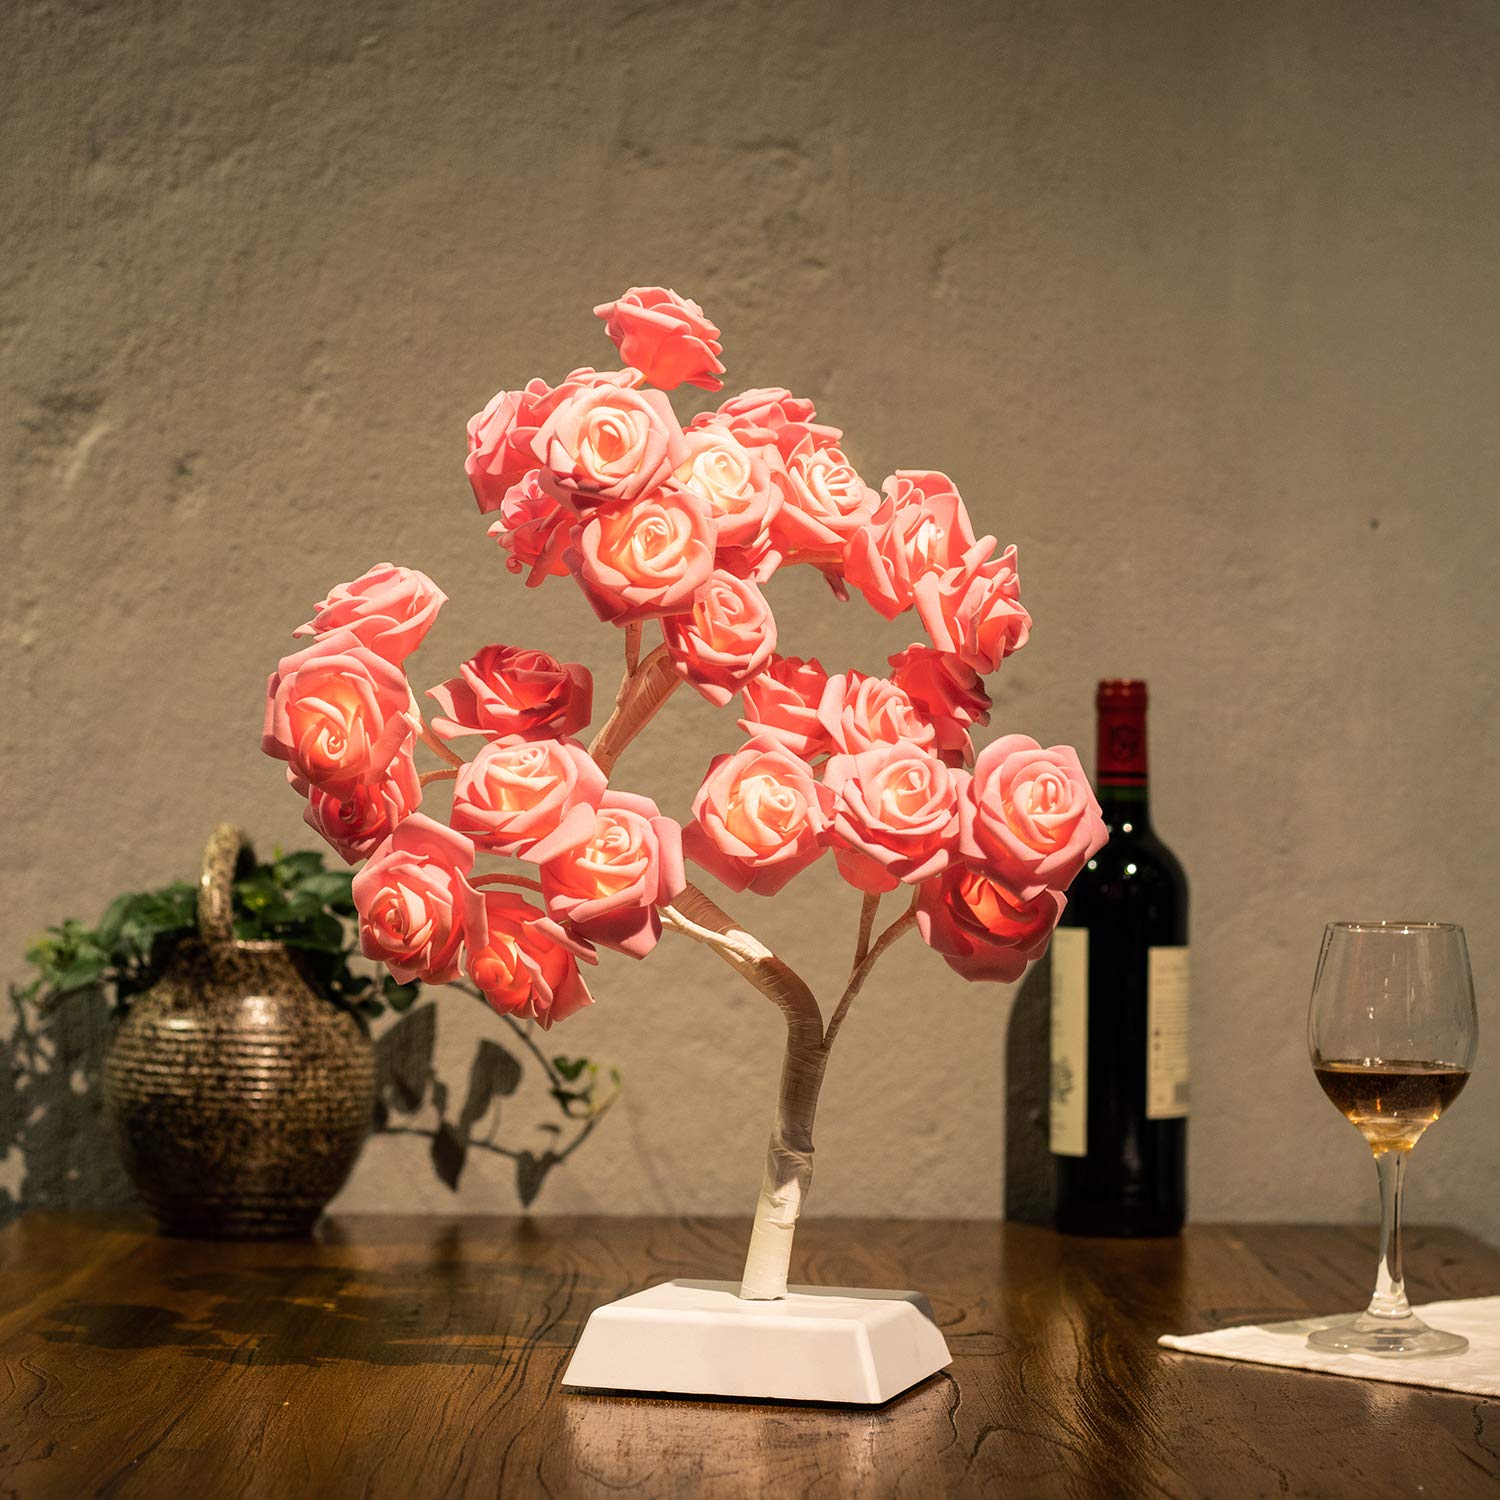 Bolylight LED Table Lamp Adjustable Rose Flower Desk Lamp